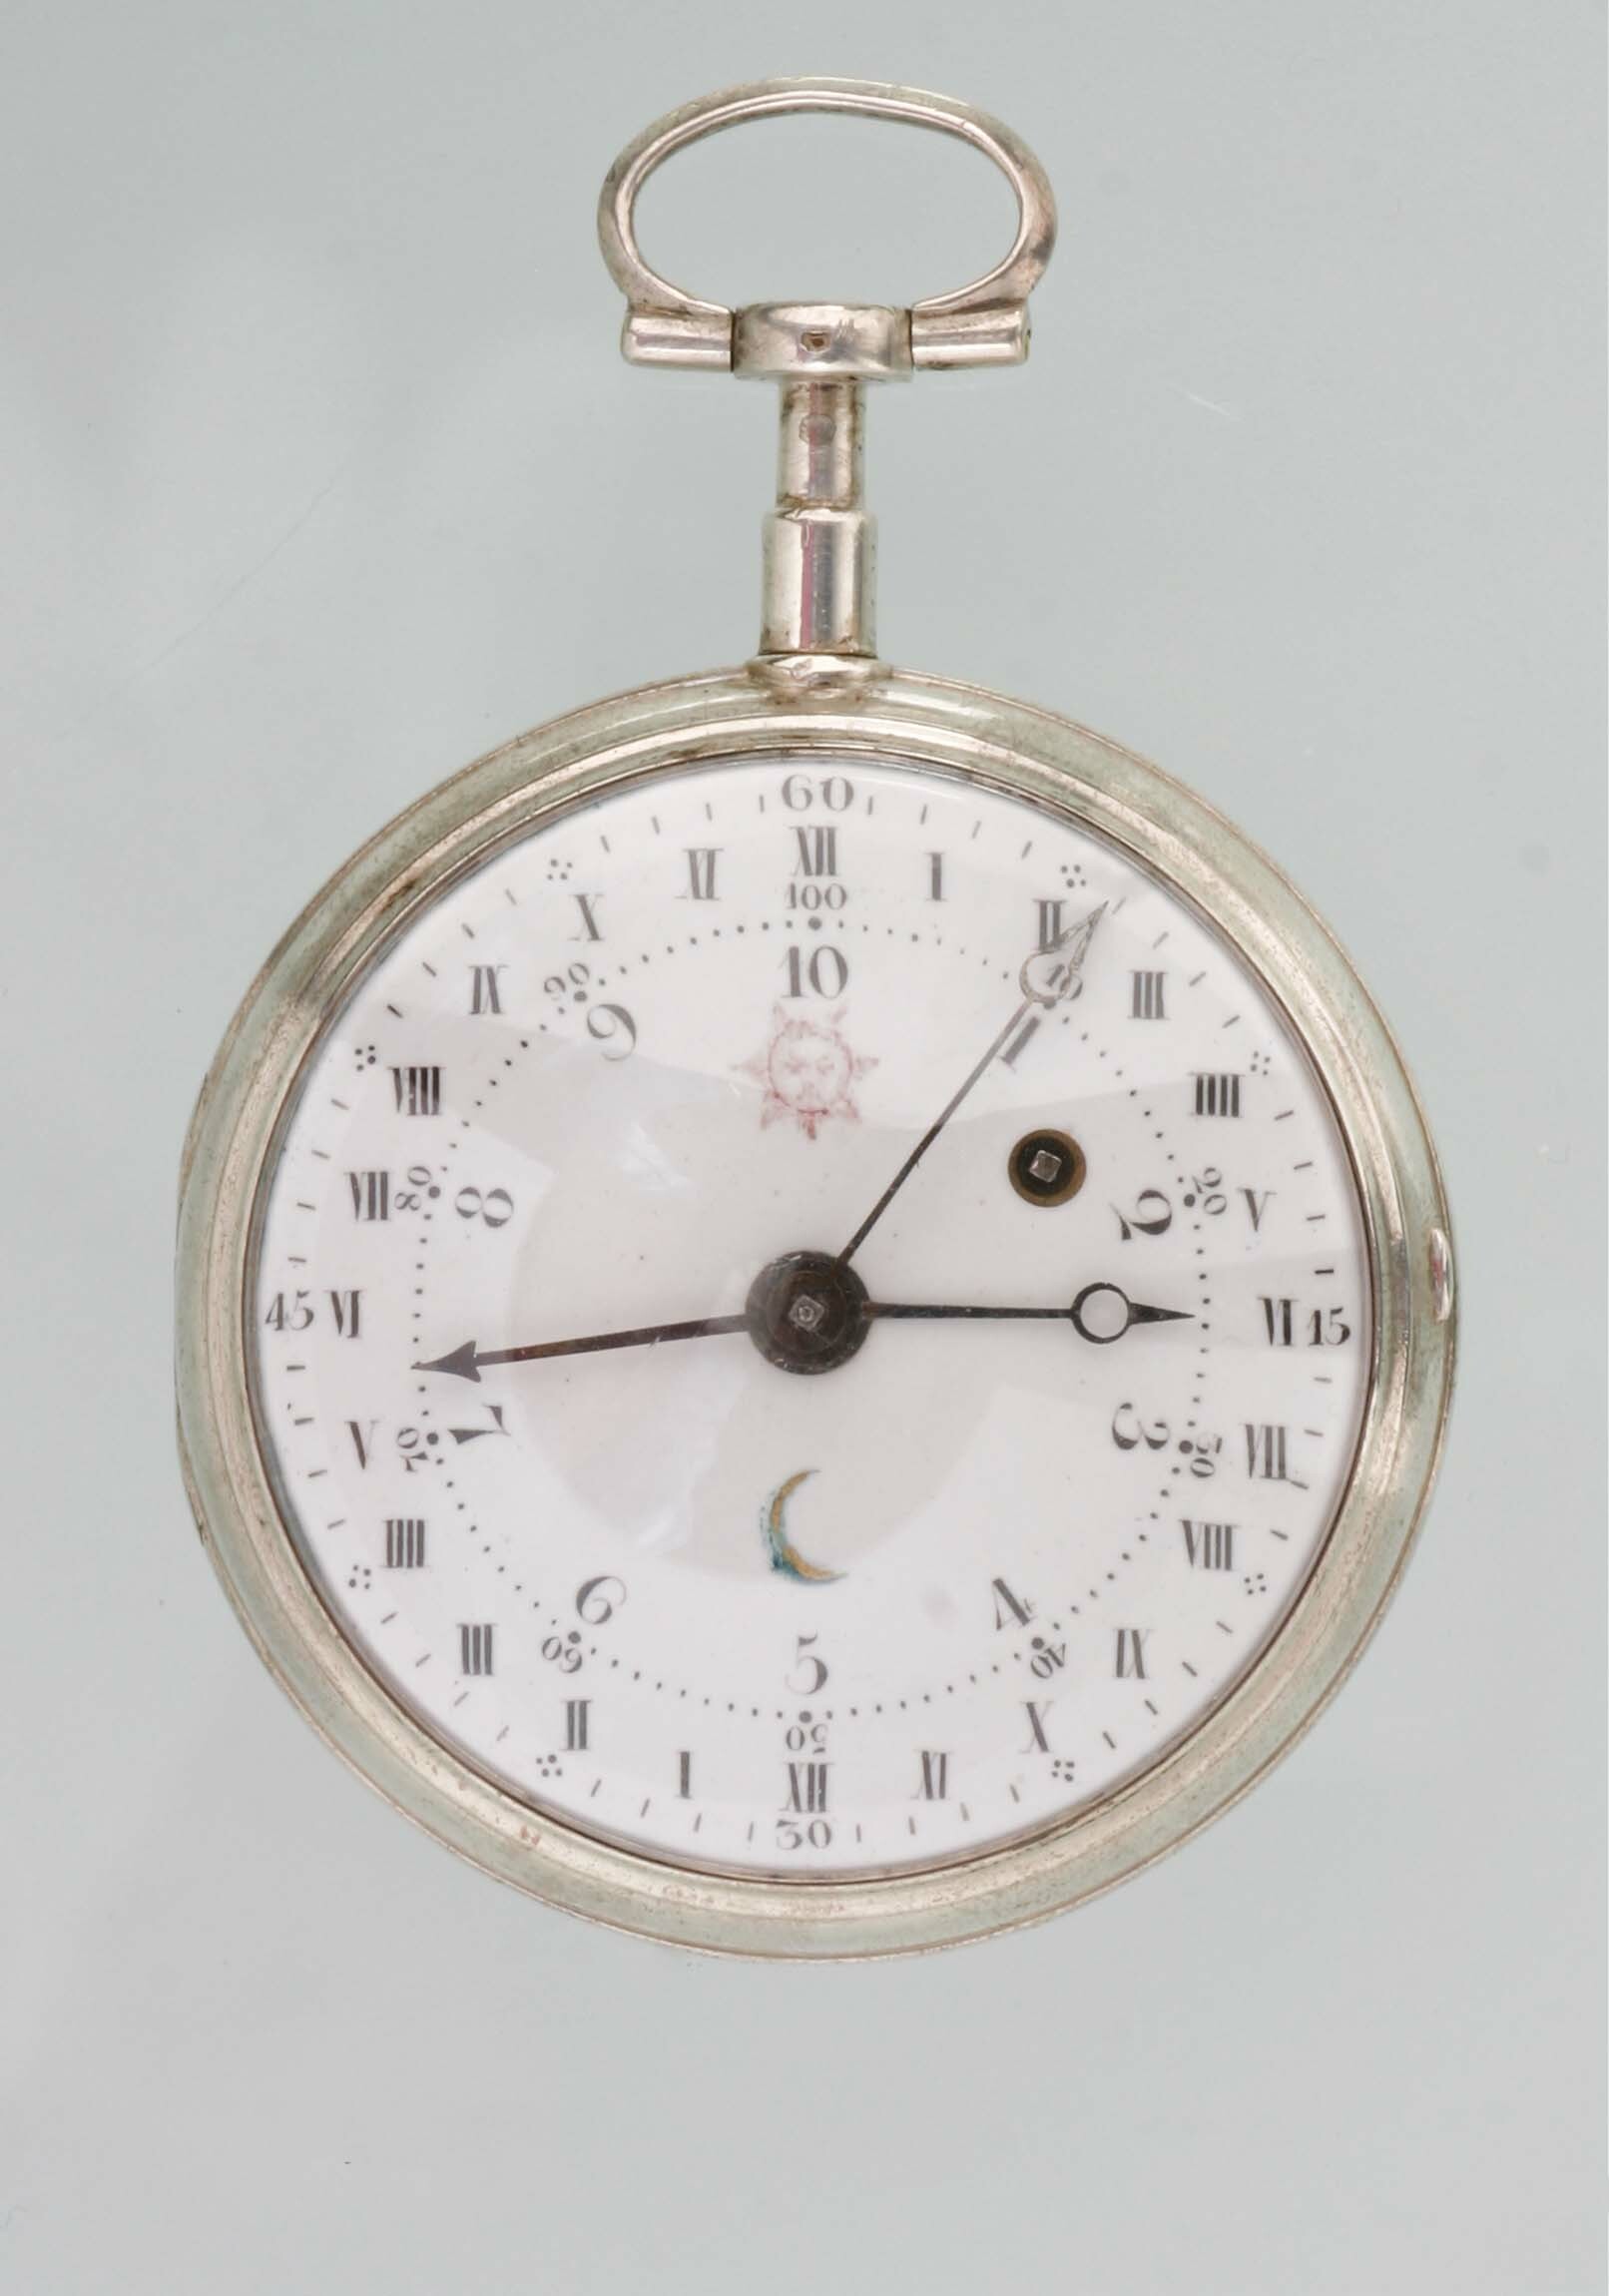 Taschenuhr mit Anzeige von Dezimalzeit und Normalzeit, um 1793 (Deutsches Uhrenmuseum CC BY-SA)